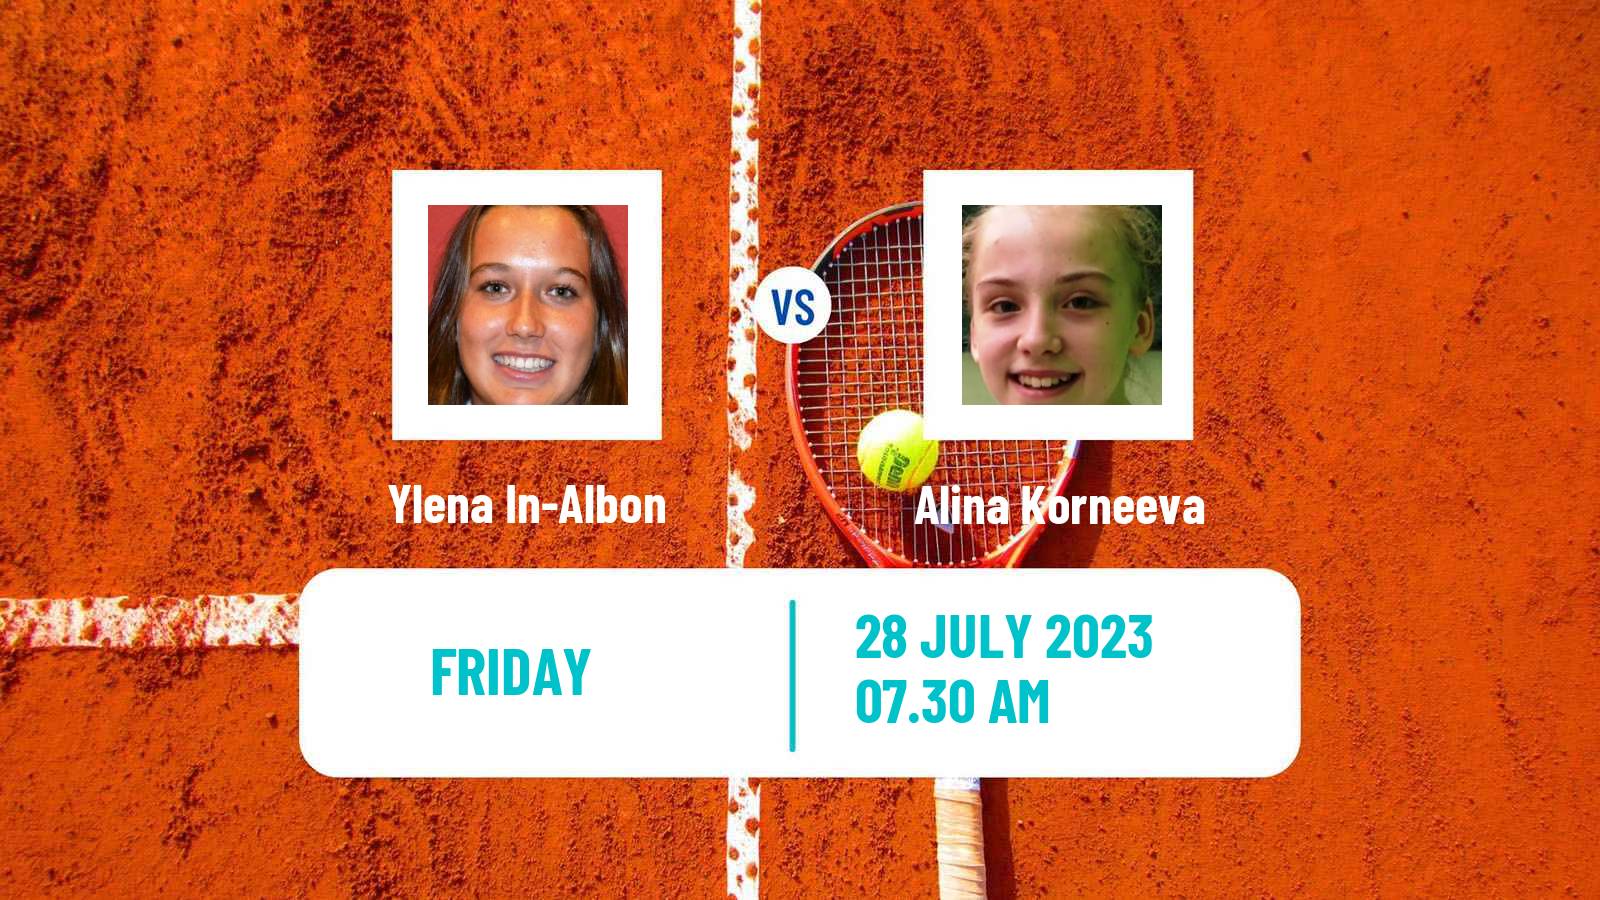 Tennis ITF W100 Figueira Da Foz Women Ylena In-Albon - Alina Korneeva